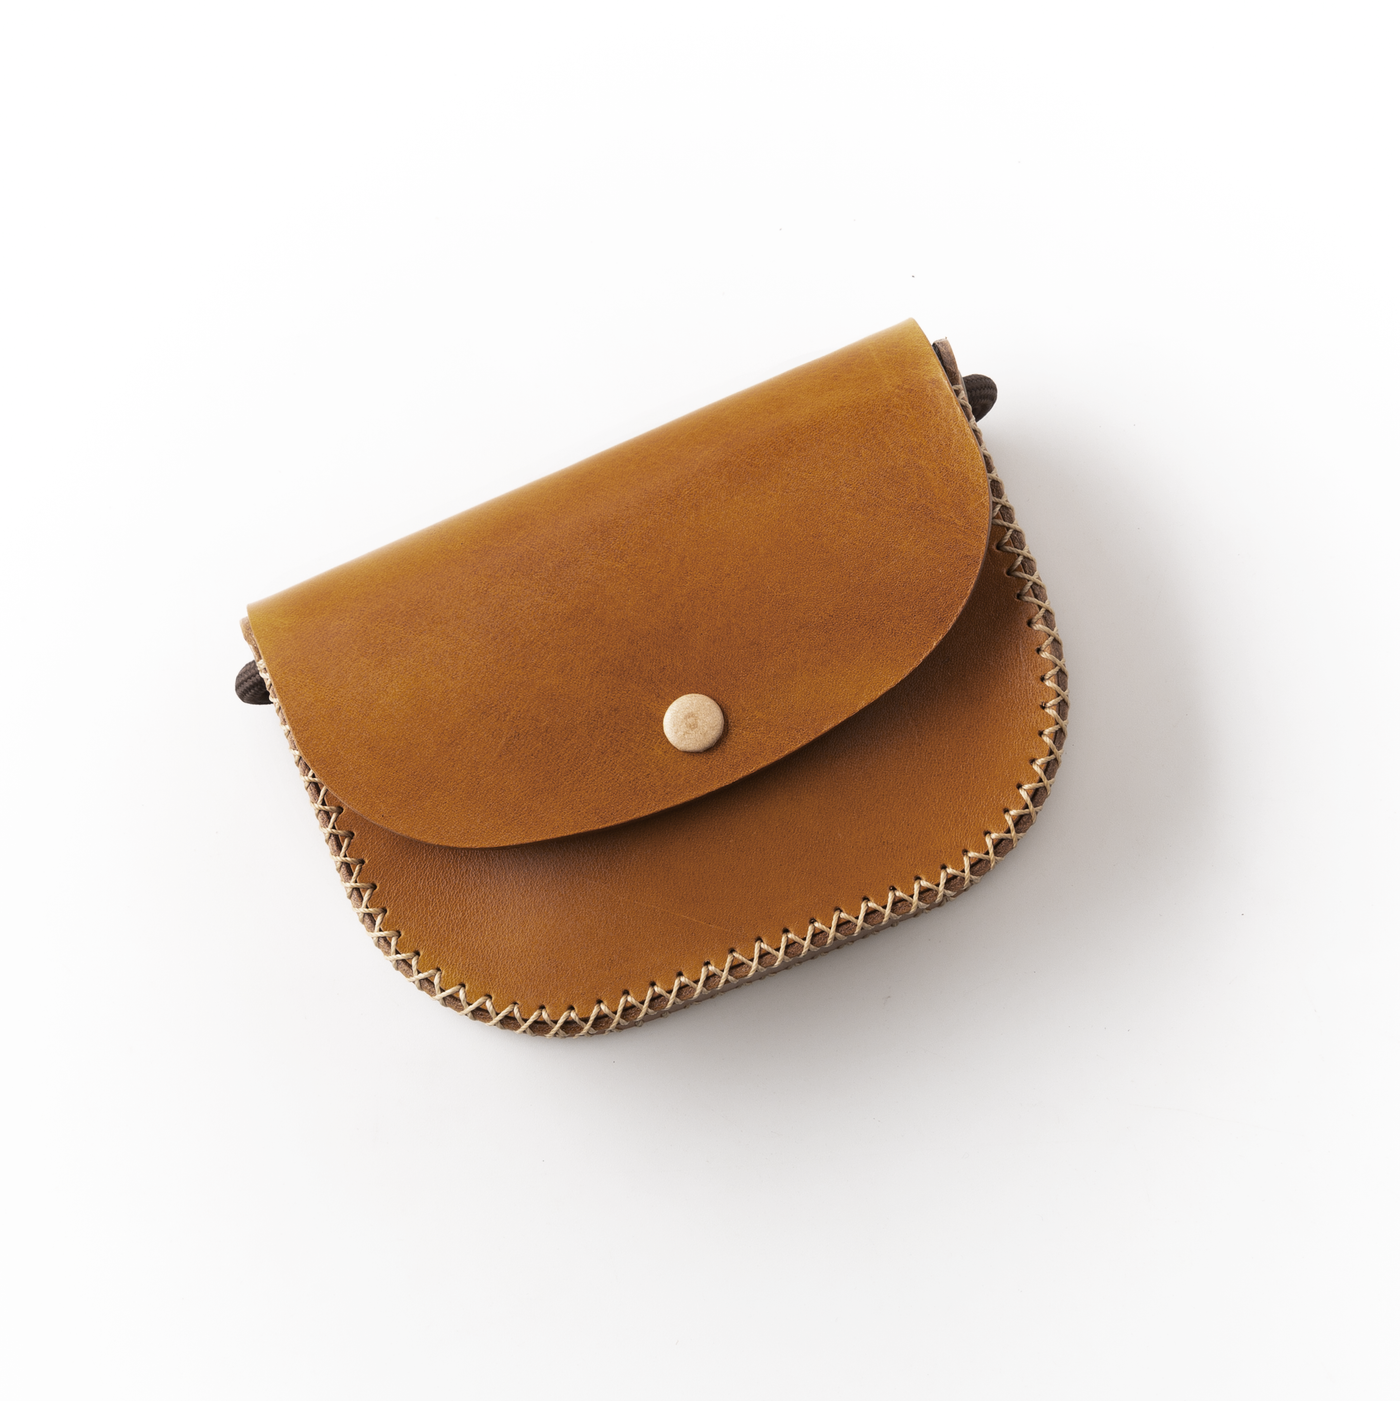 BUELLAS Leather Crossbody Bag